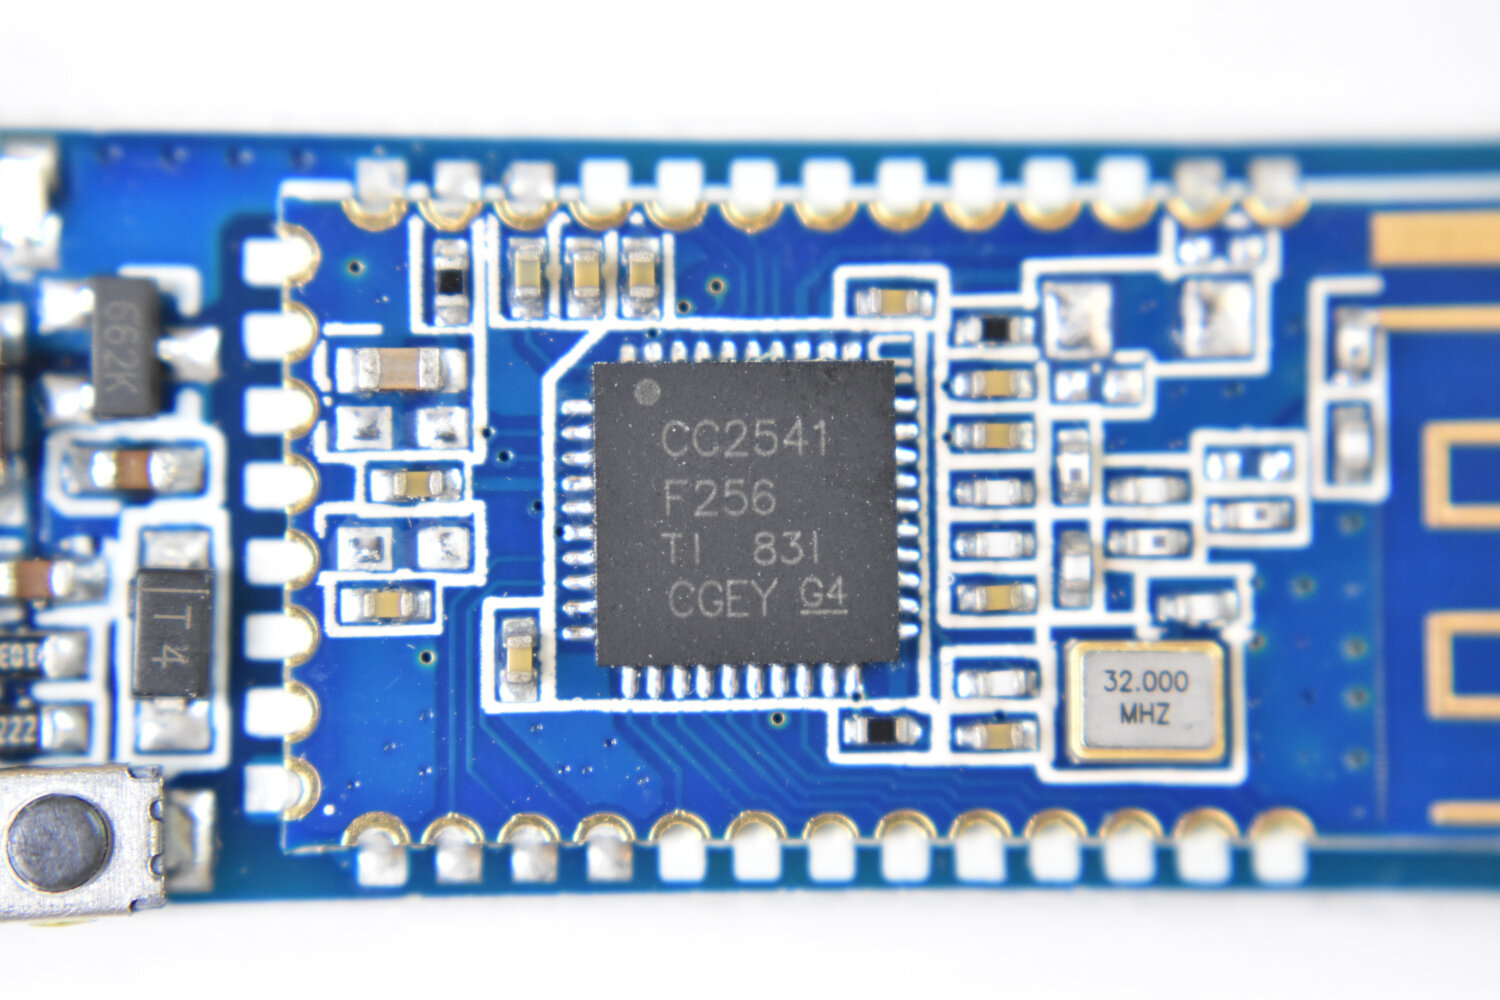 4.0 HM-10 CC2540 CC2541 BLE Bluetooth Serial Wireless Module Arduino 